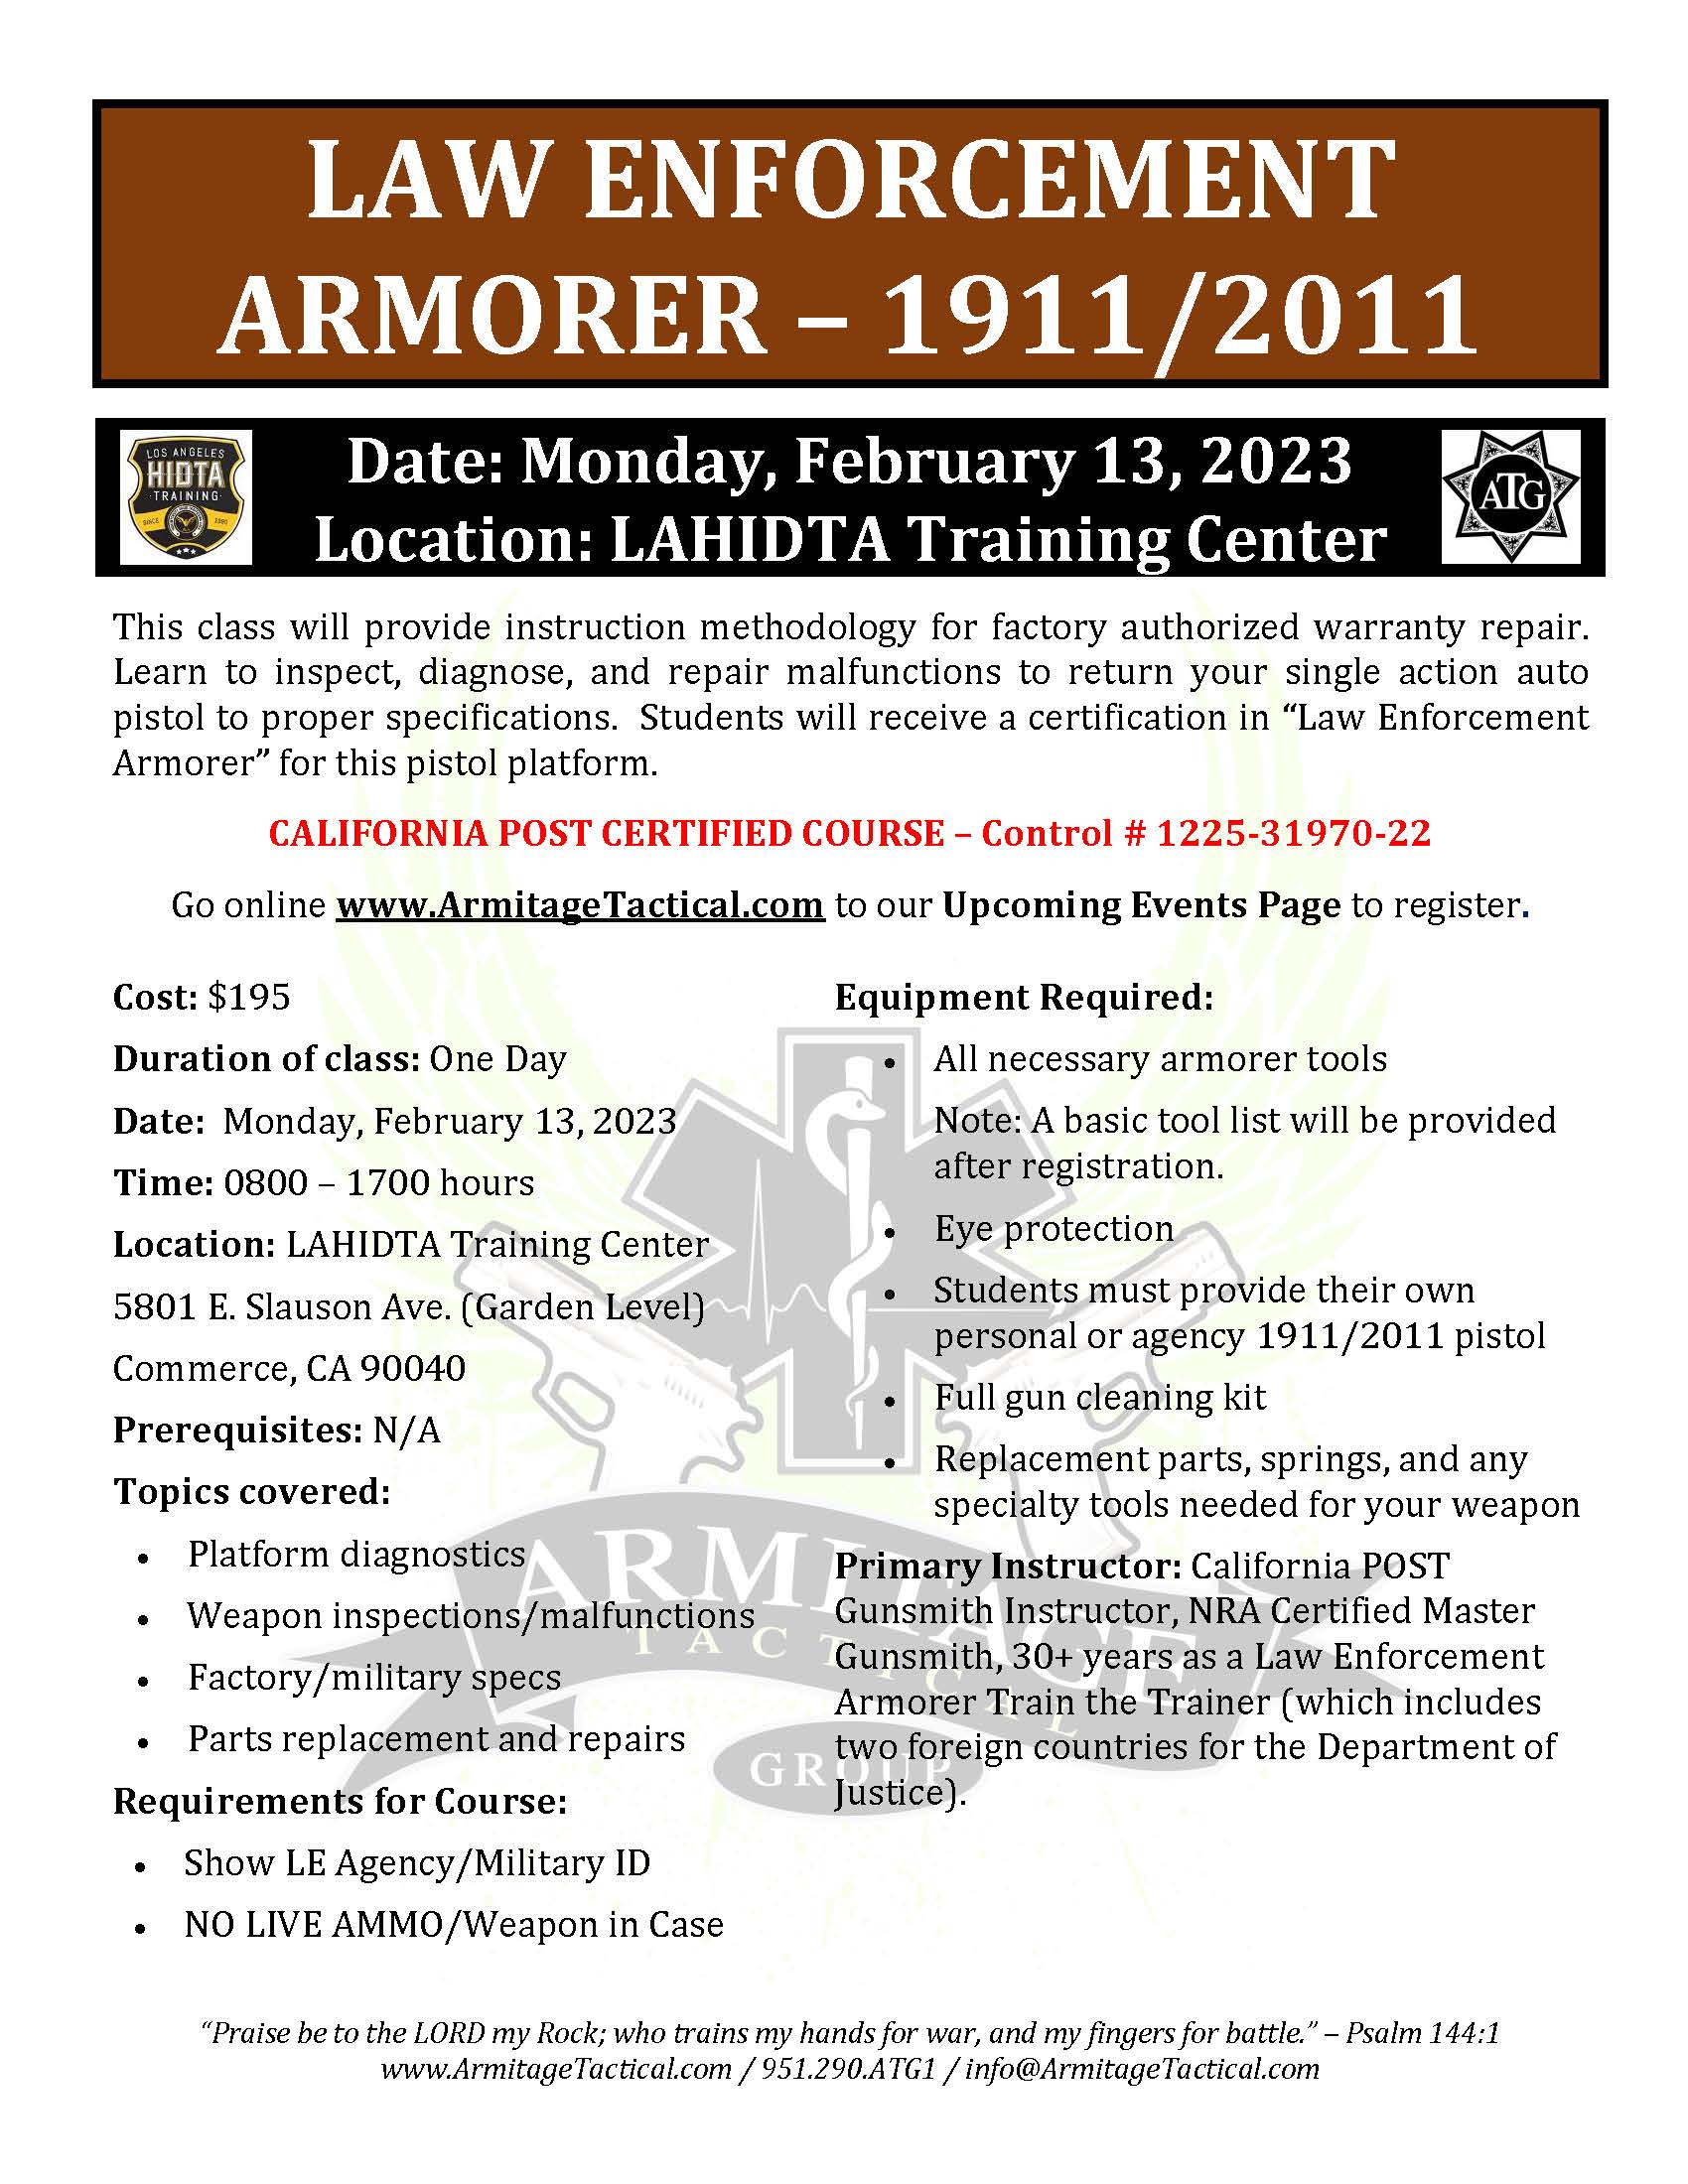 2023/02/13 - 1911-2011 LE Armorer's Course - Commerce, CA